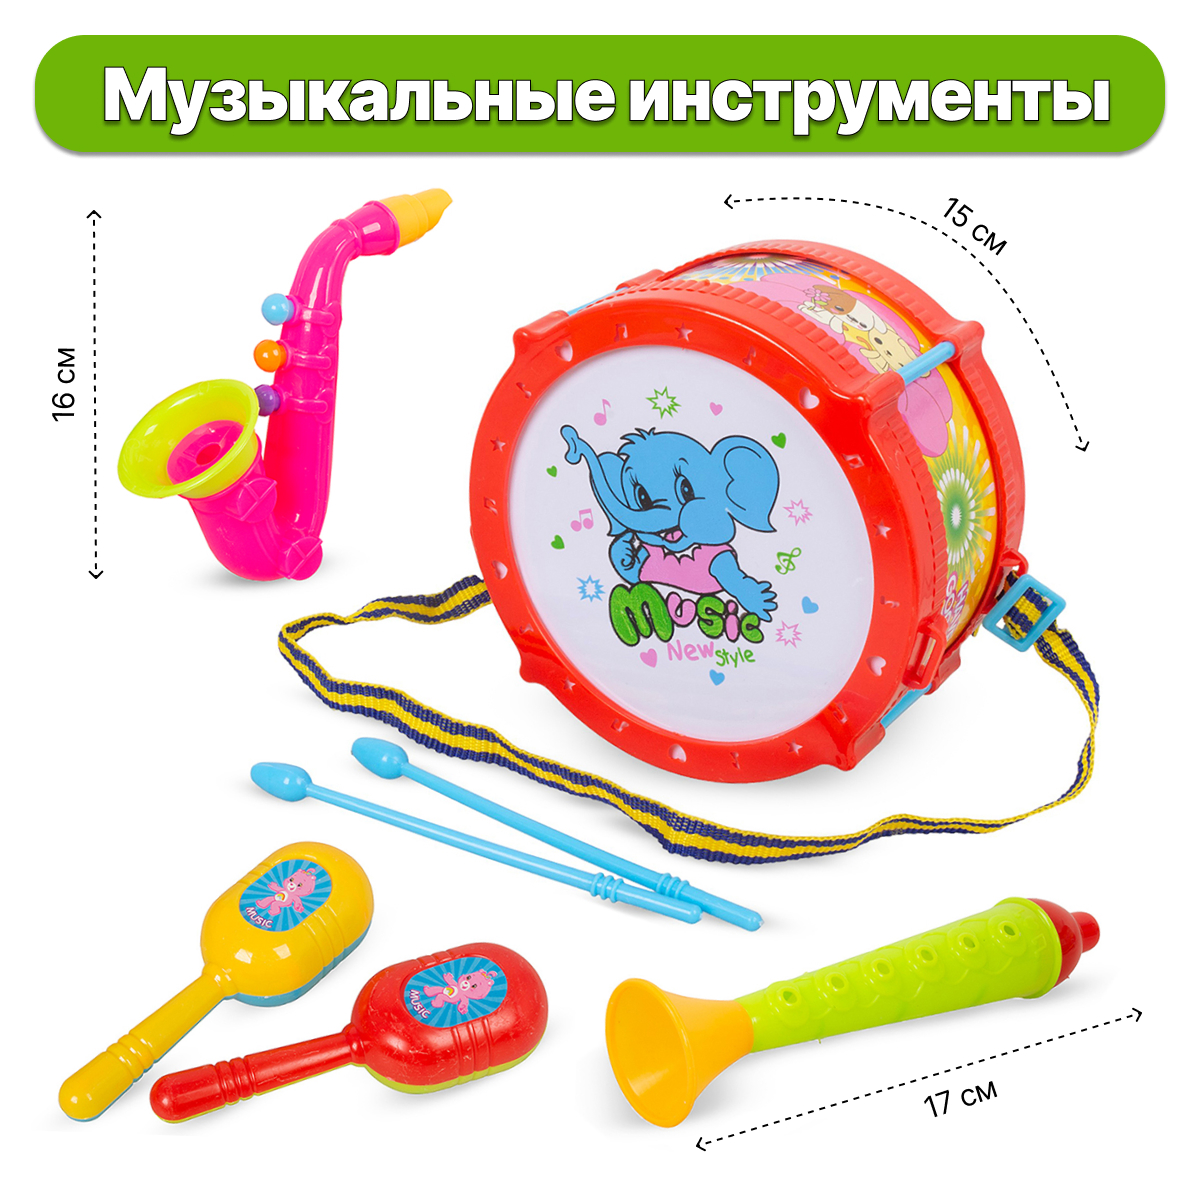 Набор музыкальных инструментов детских Tongde умка набор музыкальных игрушек лол телефончик микрофончик